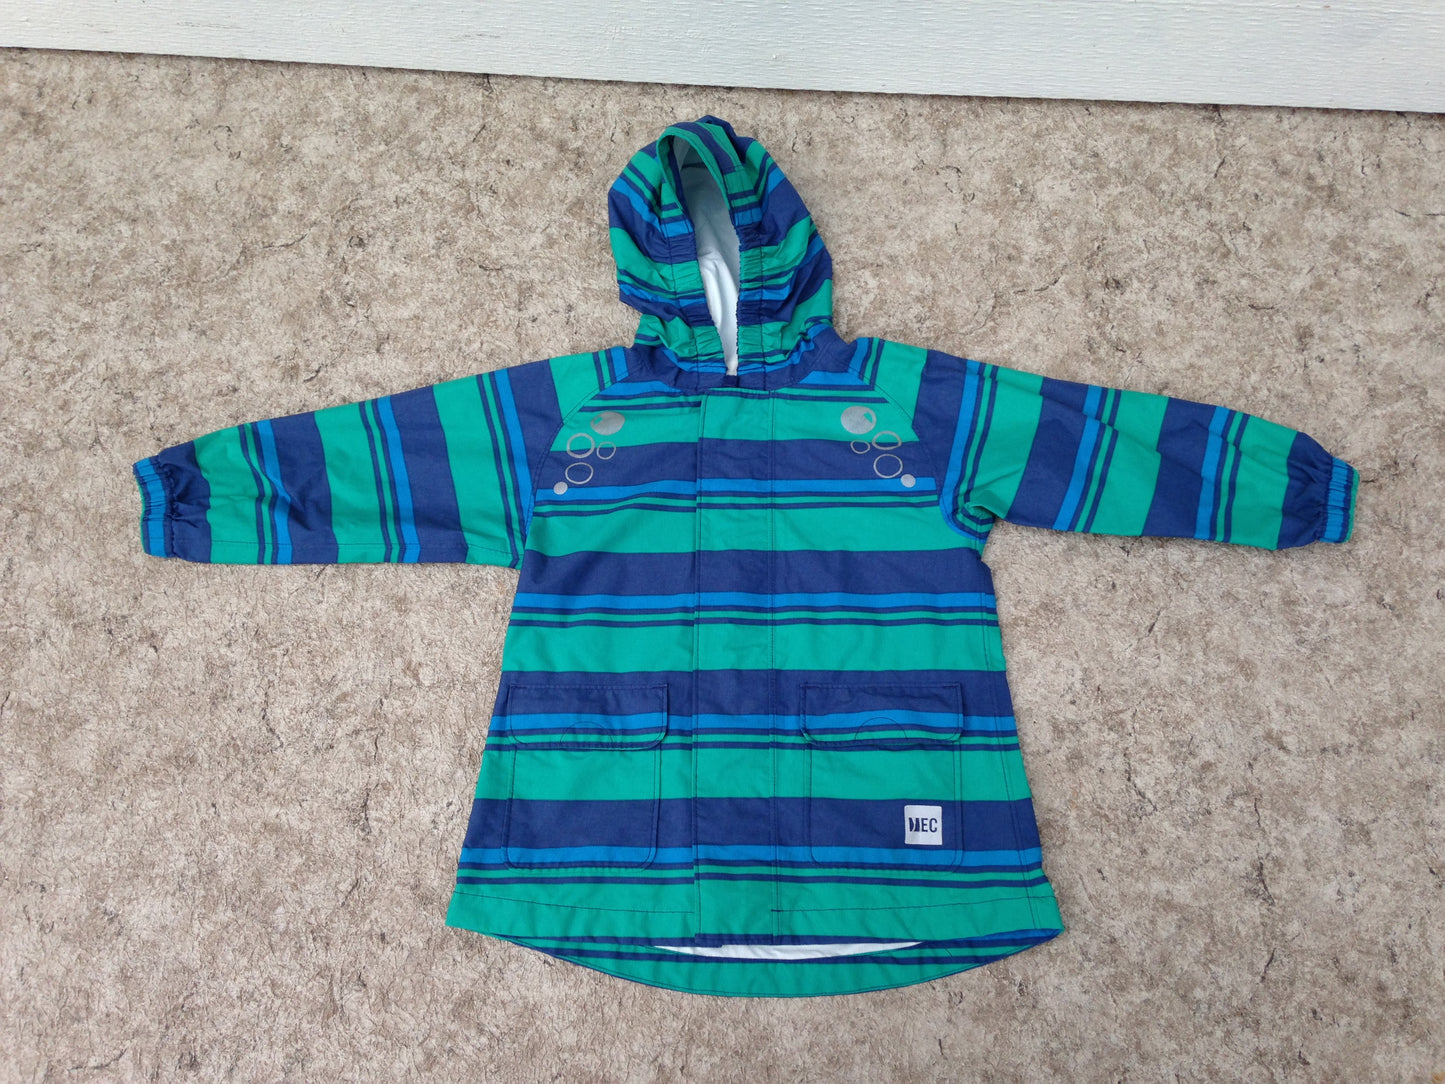 Rain Coat Child Size 24 Month MEC Teal Blue Excellent